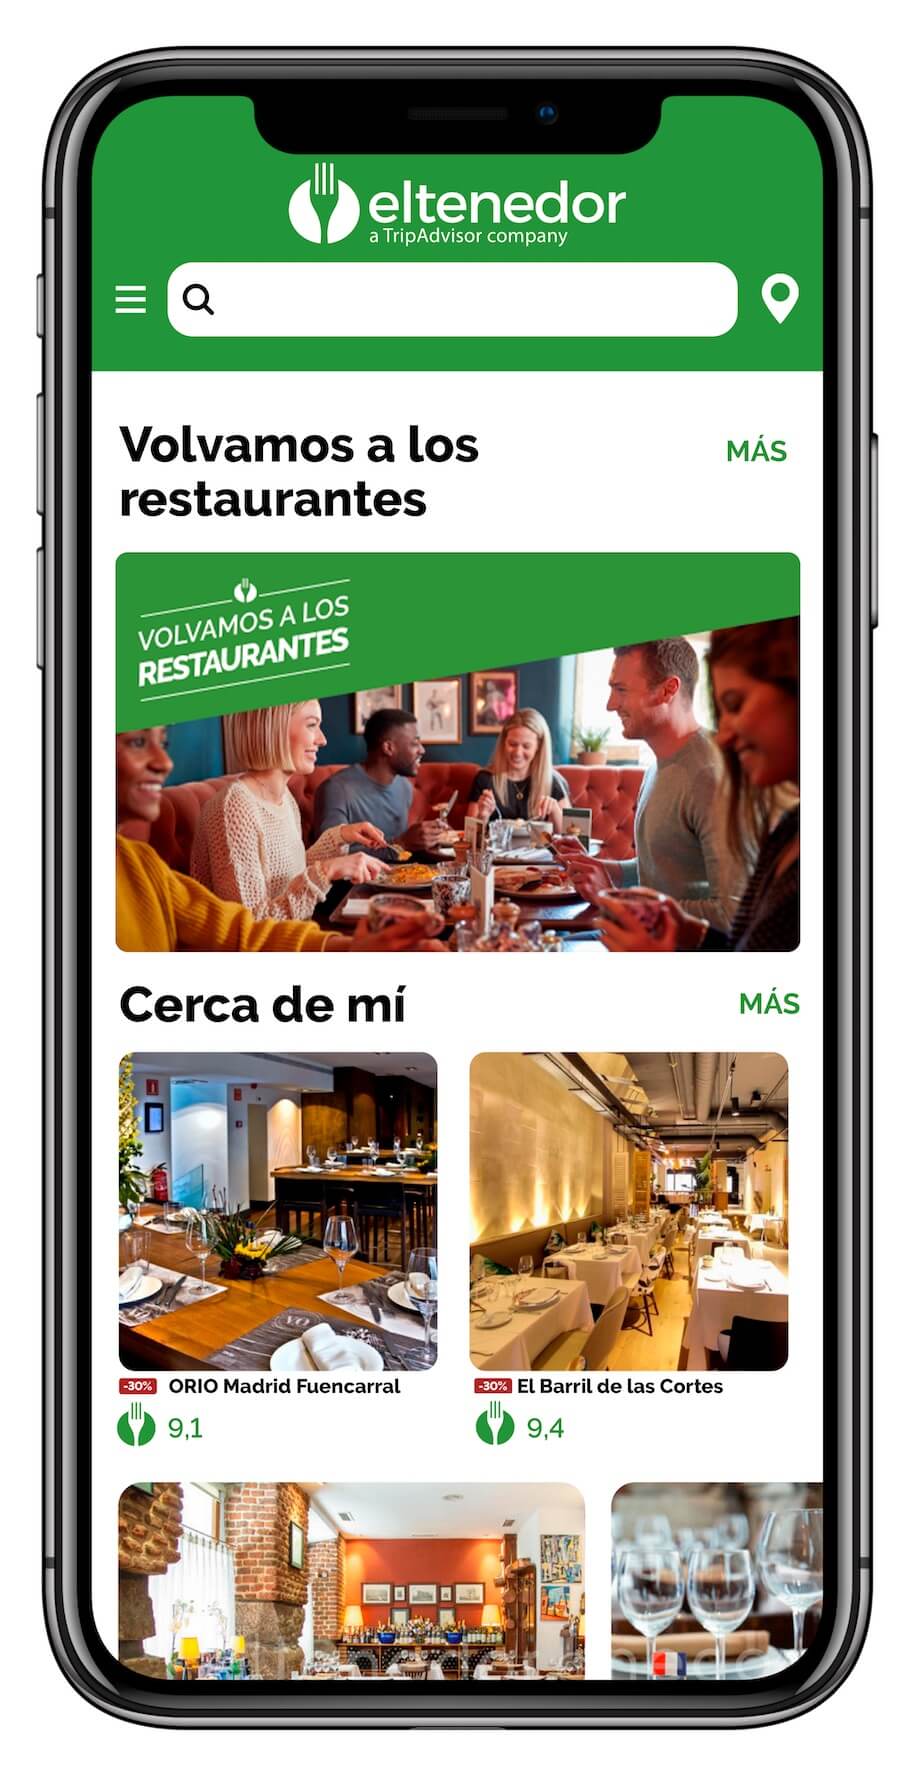 Imagen de la aplicación de ElTenedor con la campaña volvamos a los restaurantes